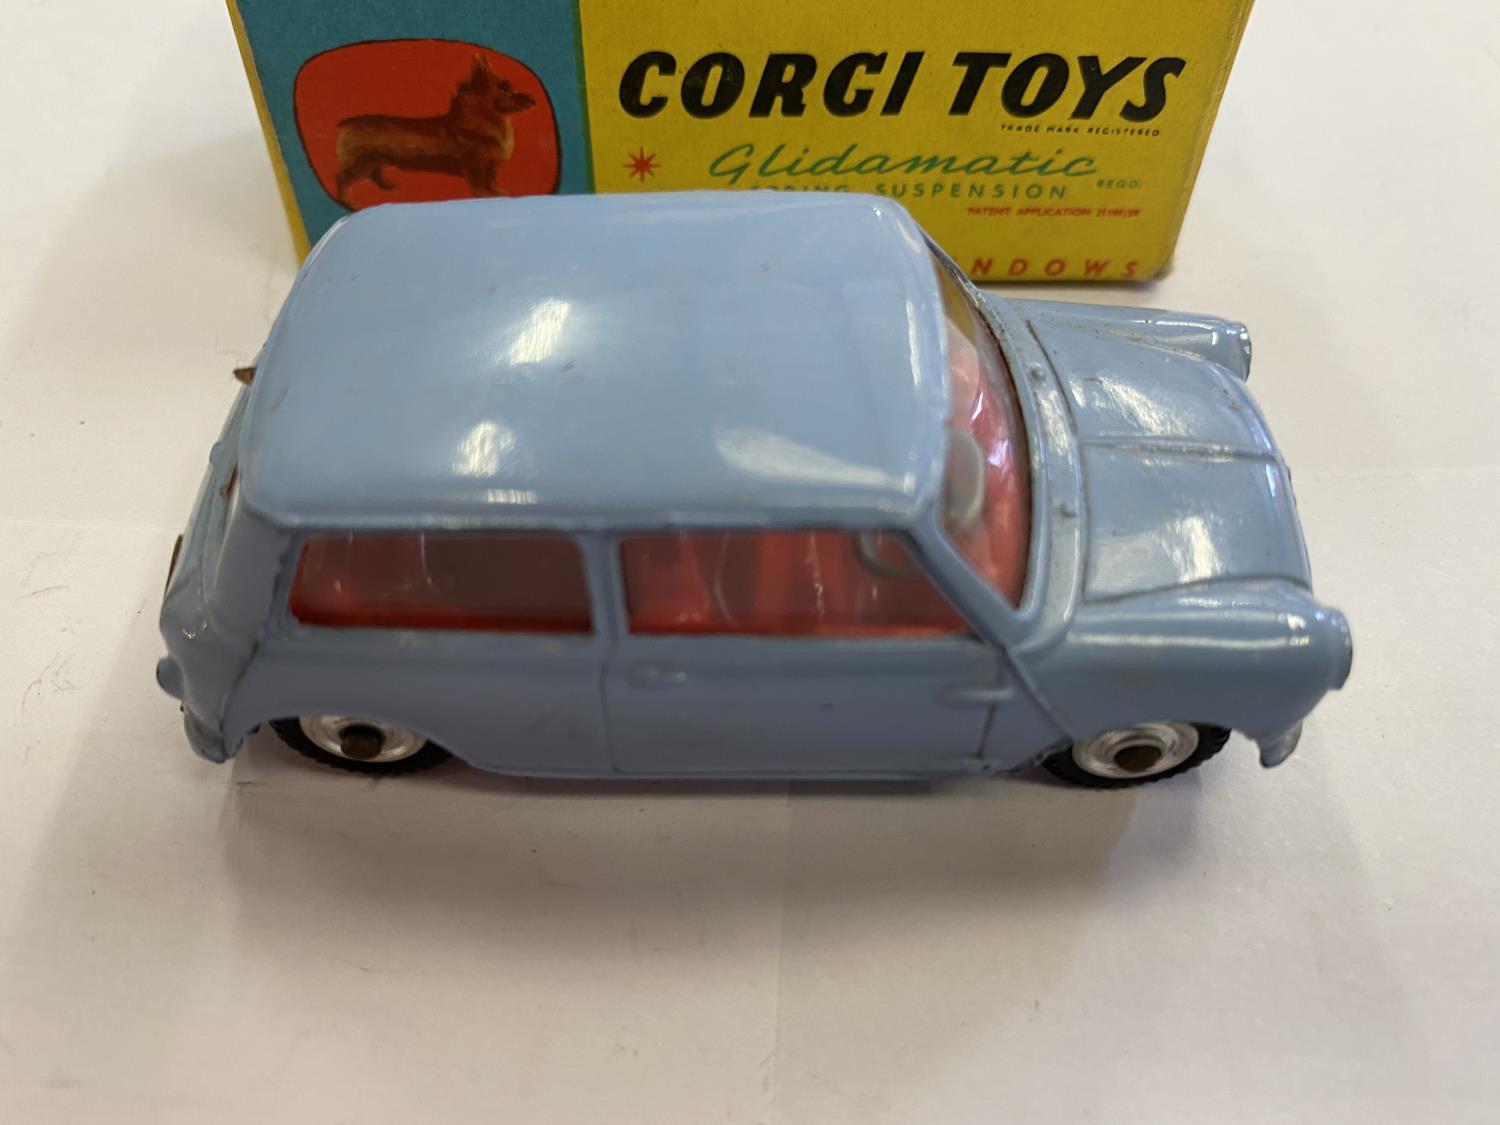 A CORGI TOYS MORRIS MINI-MINOR CAR, BOXED, MODEL NUMBER 226 - Image 2 of 3